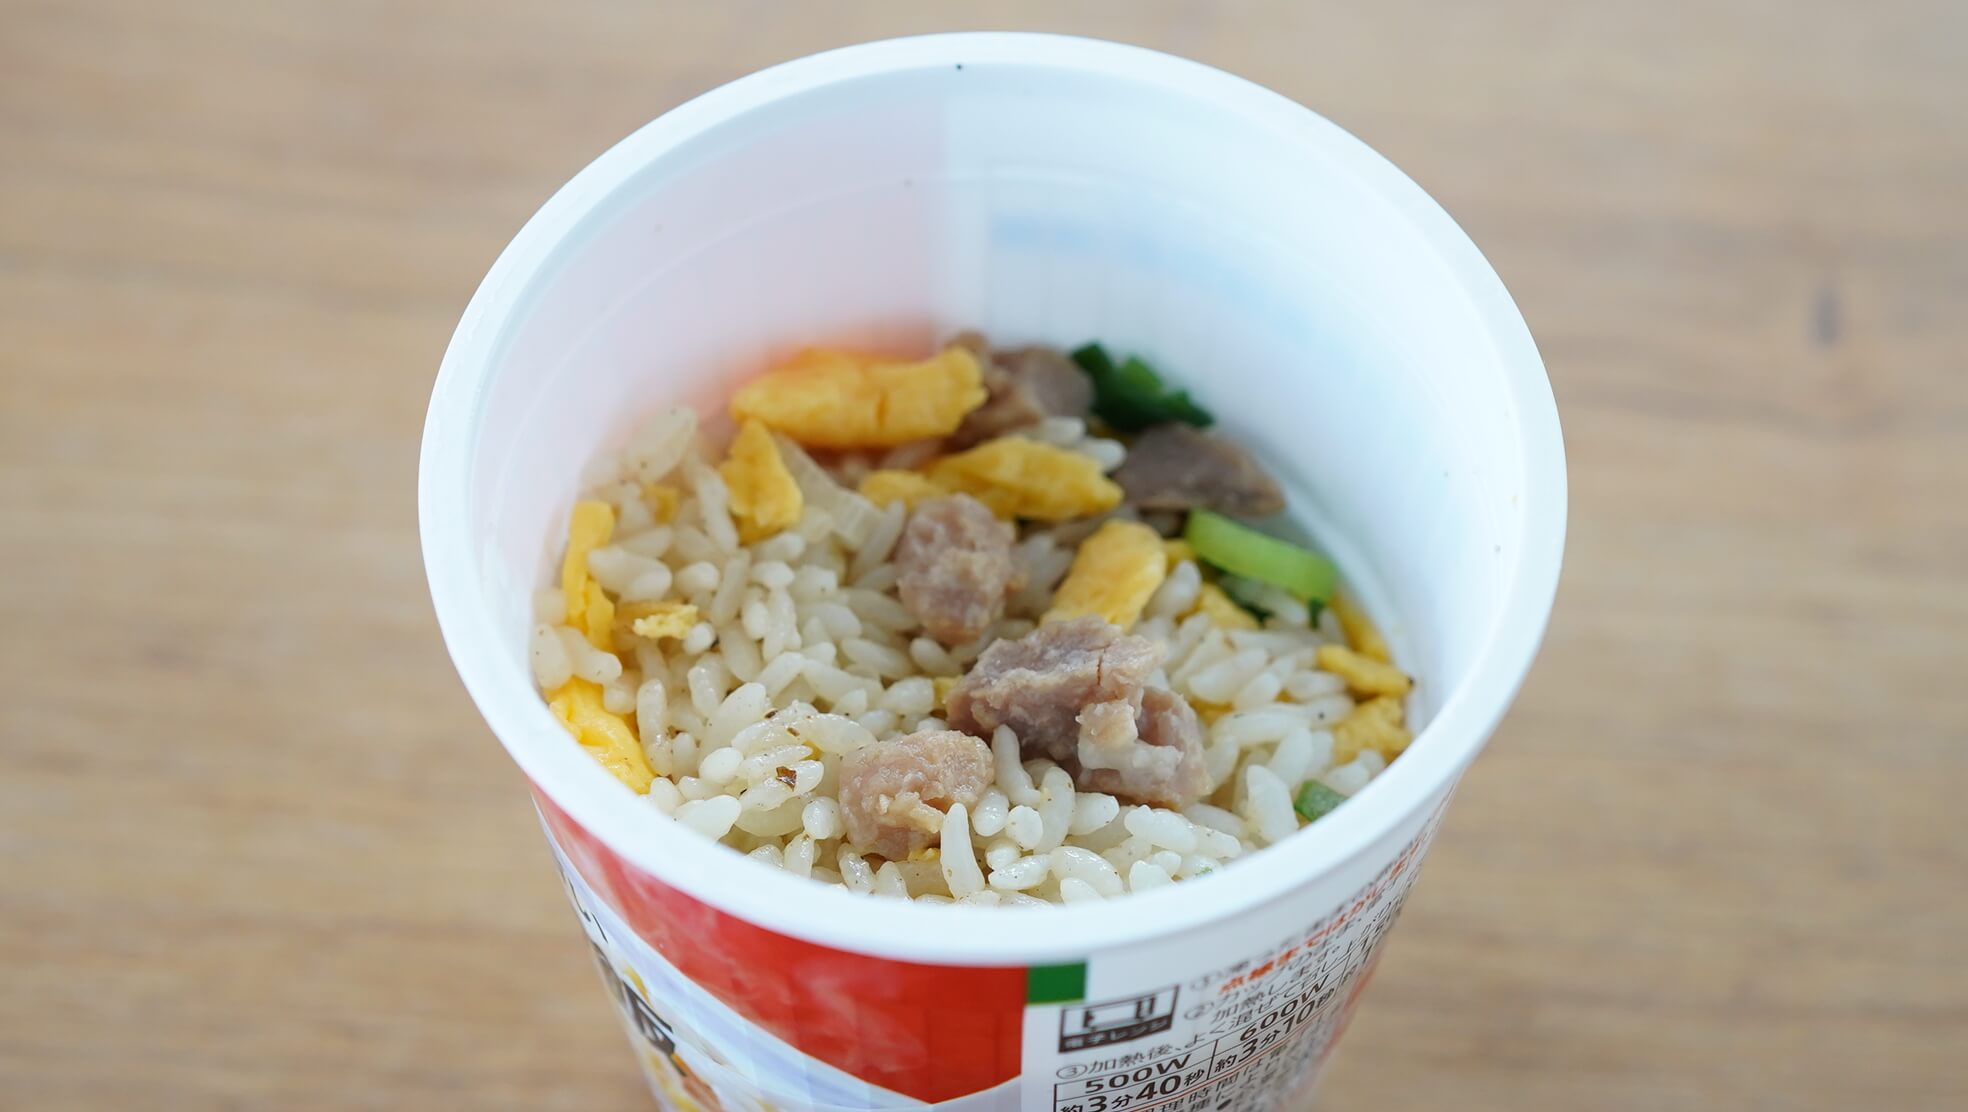 セブンイレブンのおすすめ冷凍食品「シンプルが旨いカップ炒飯」の中身の写真